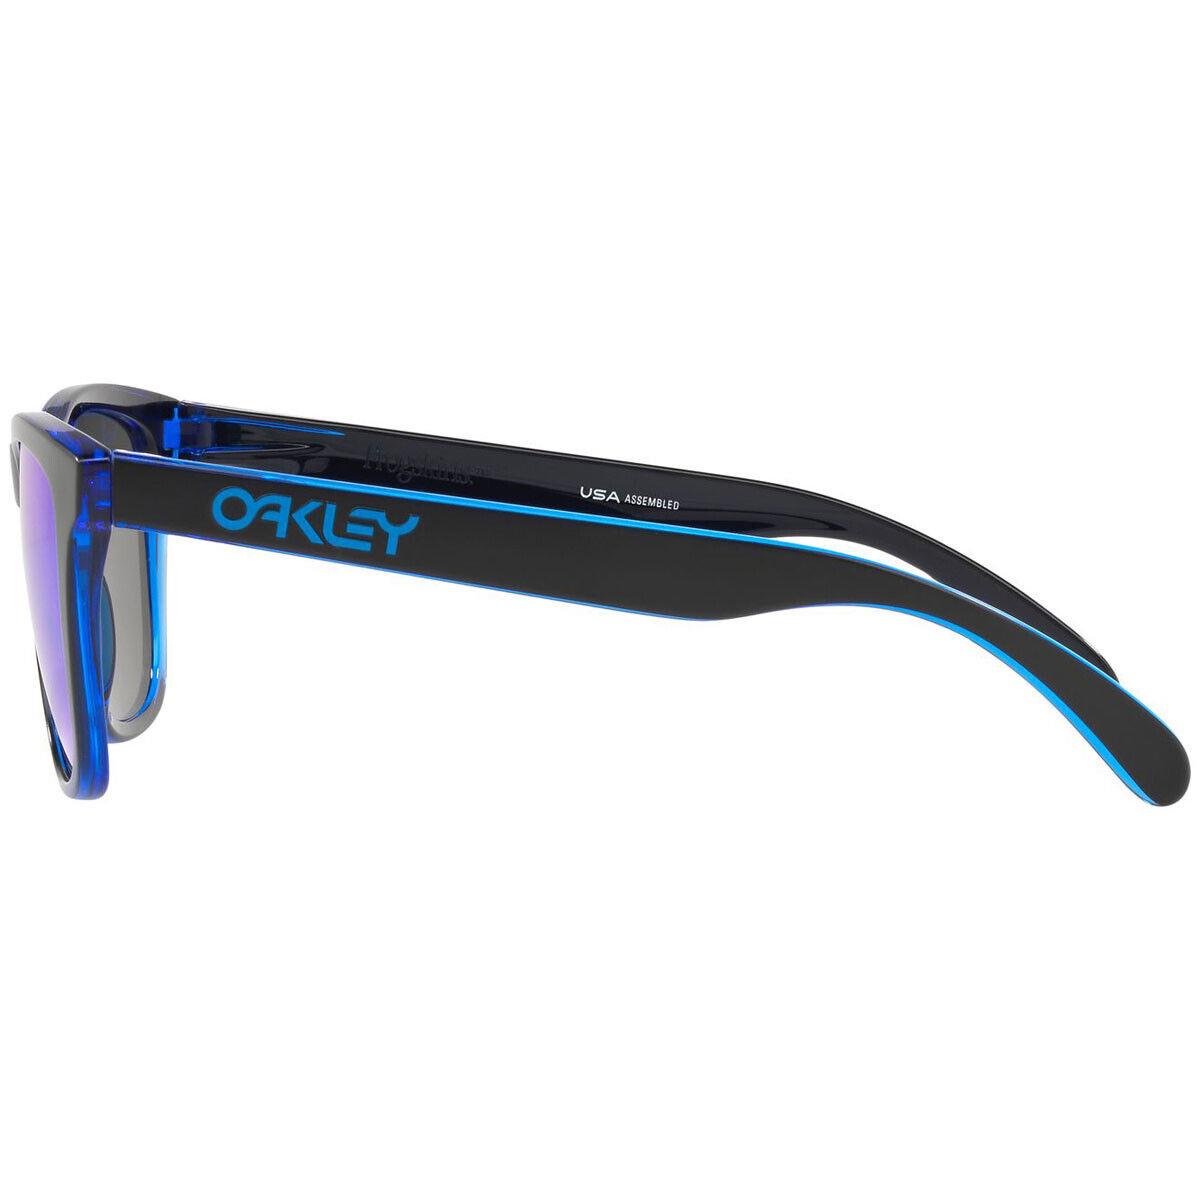 Oakley sunglasses Frogskins - Frame: Blue, Lens: Blue 0